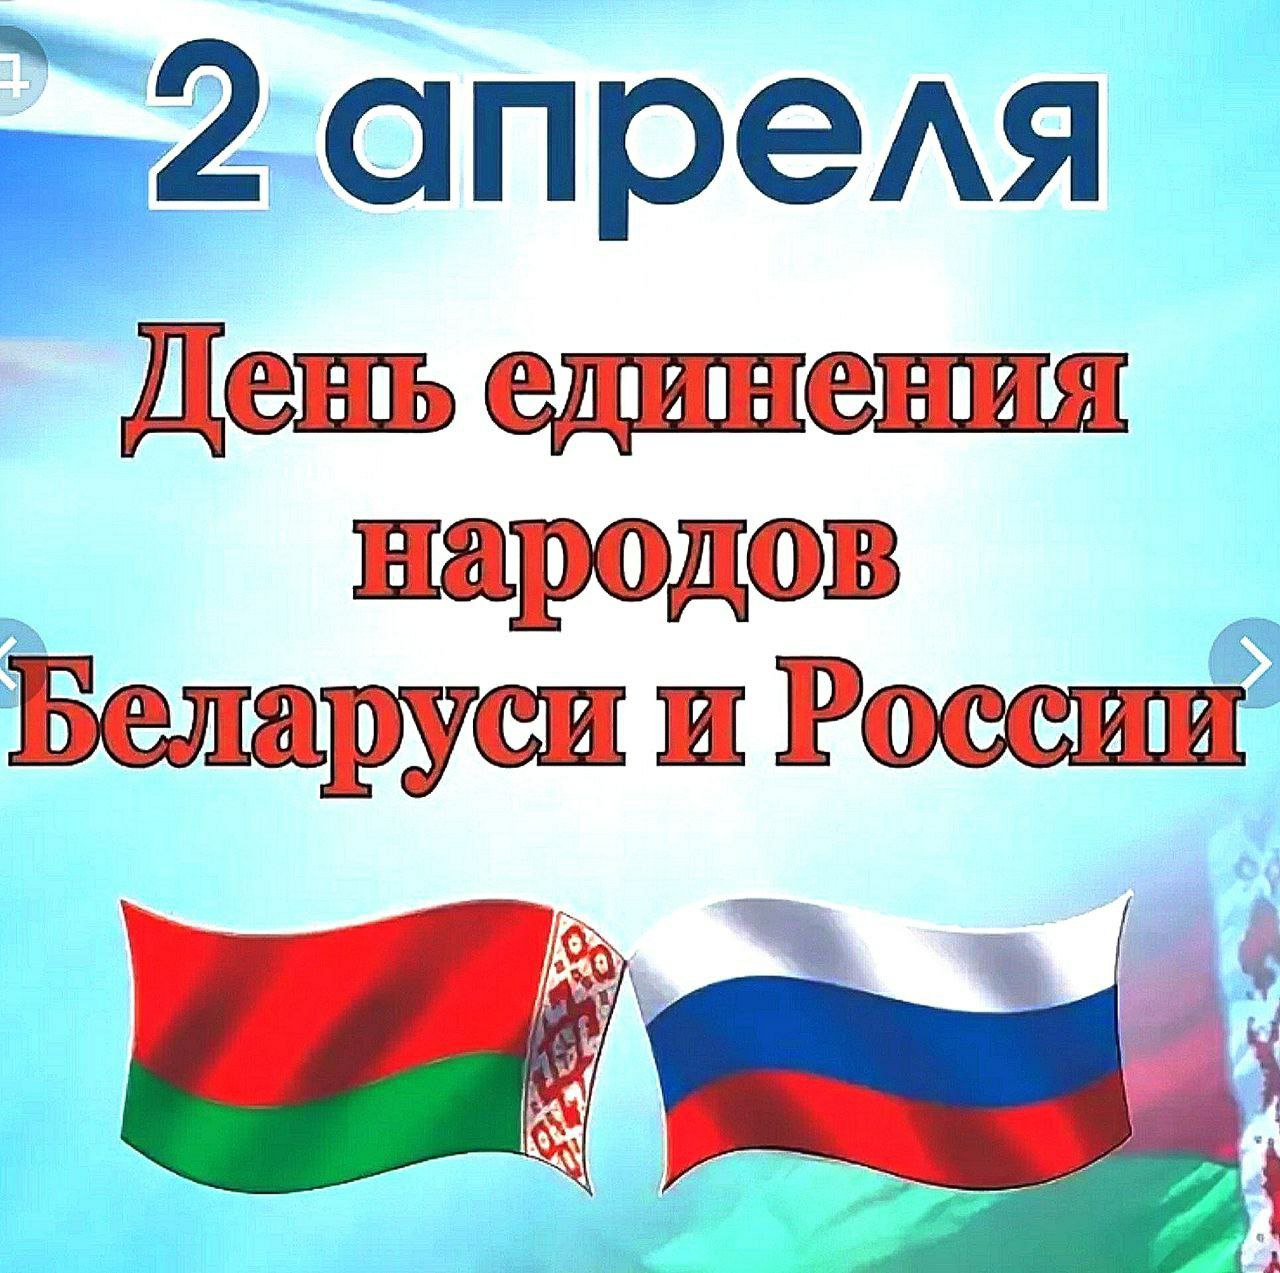 2 апреля - День единения народов Беларусси и России